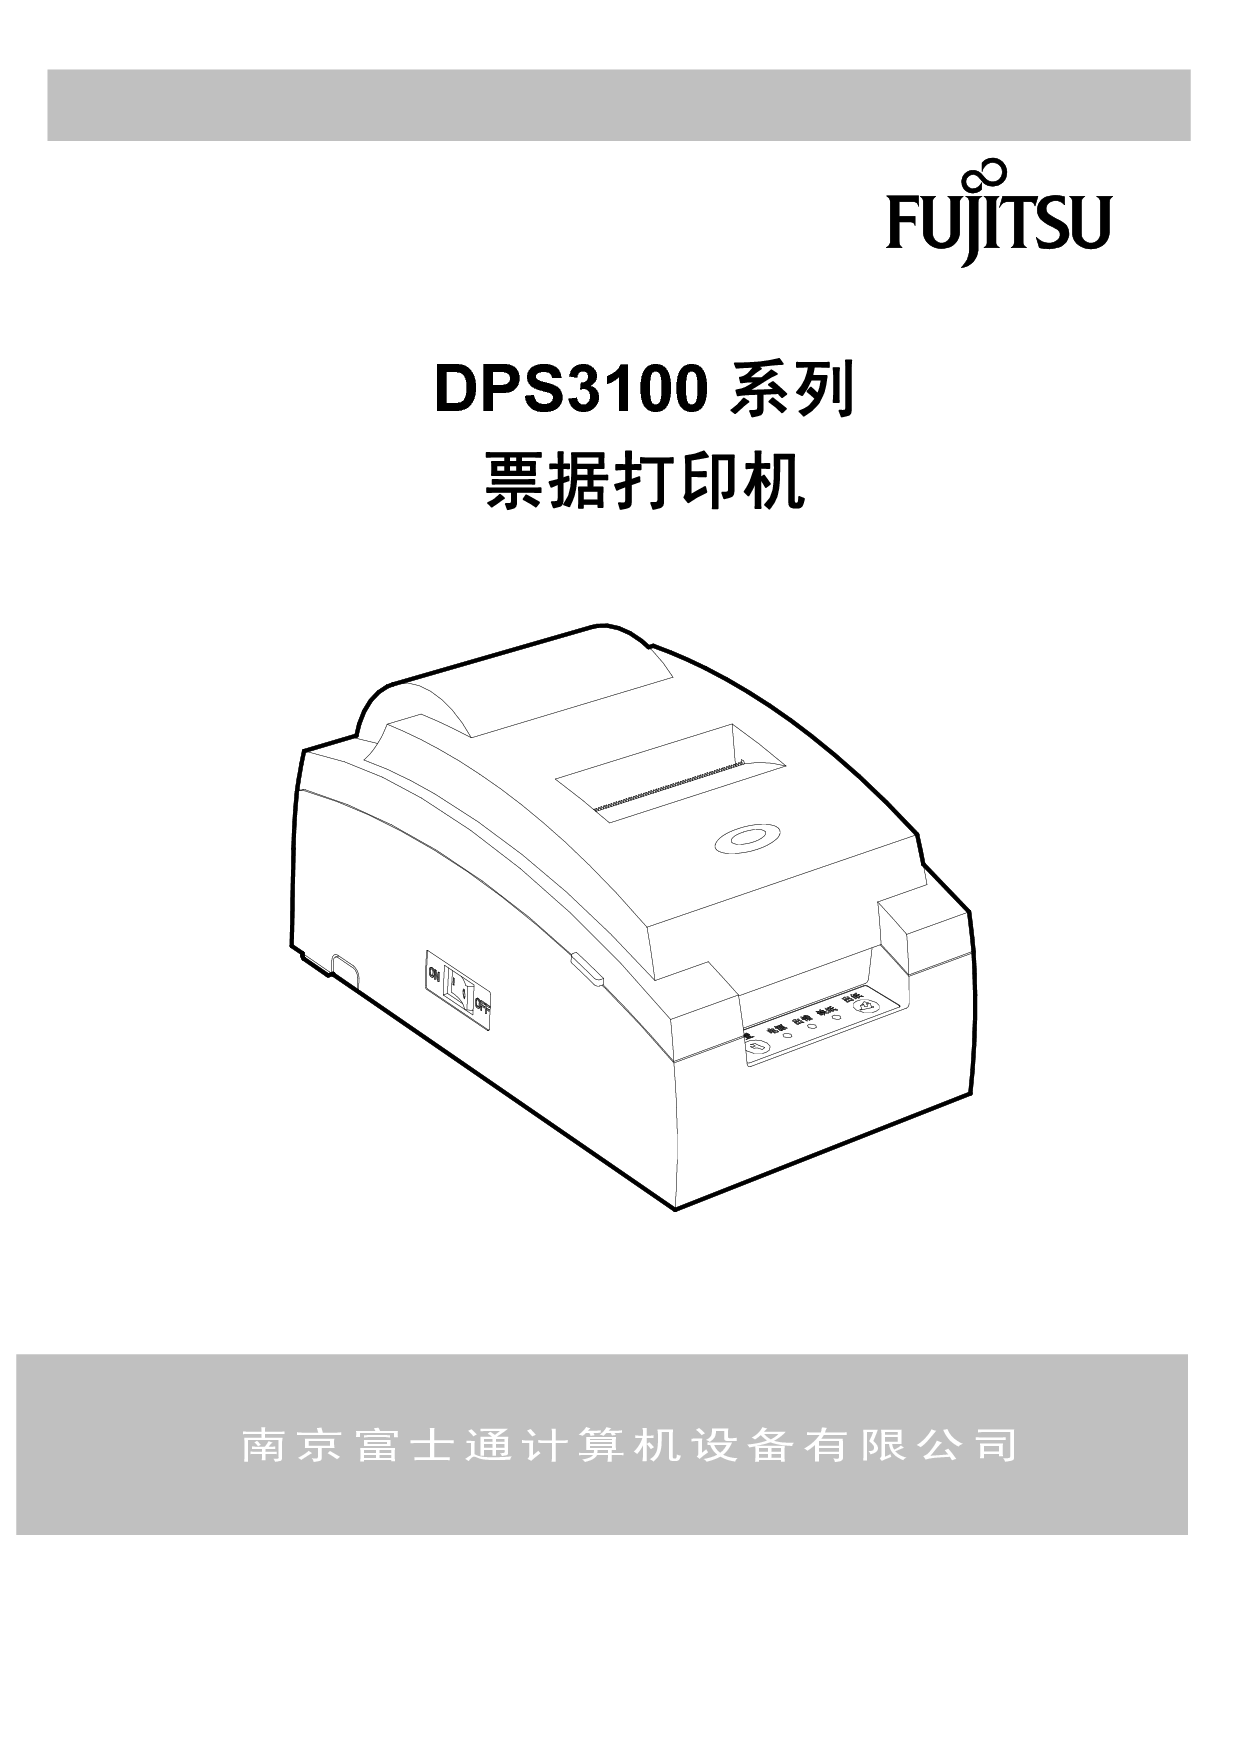 富士通 Fujitsu DPS3100 使用说明书 封面